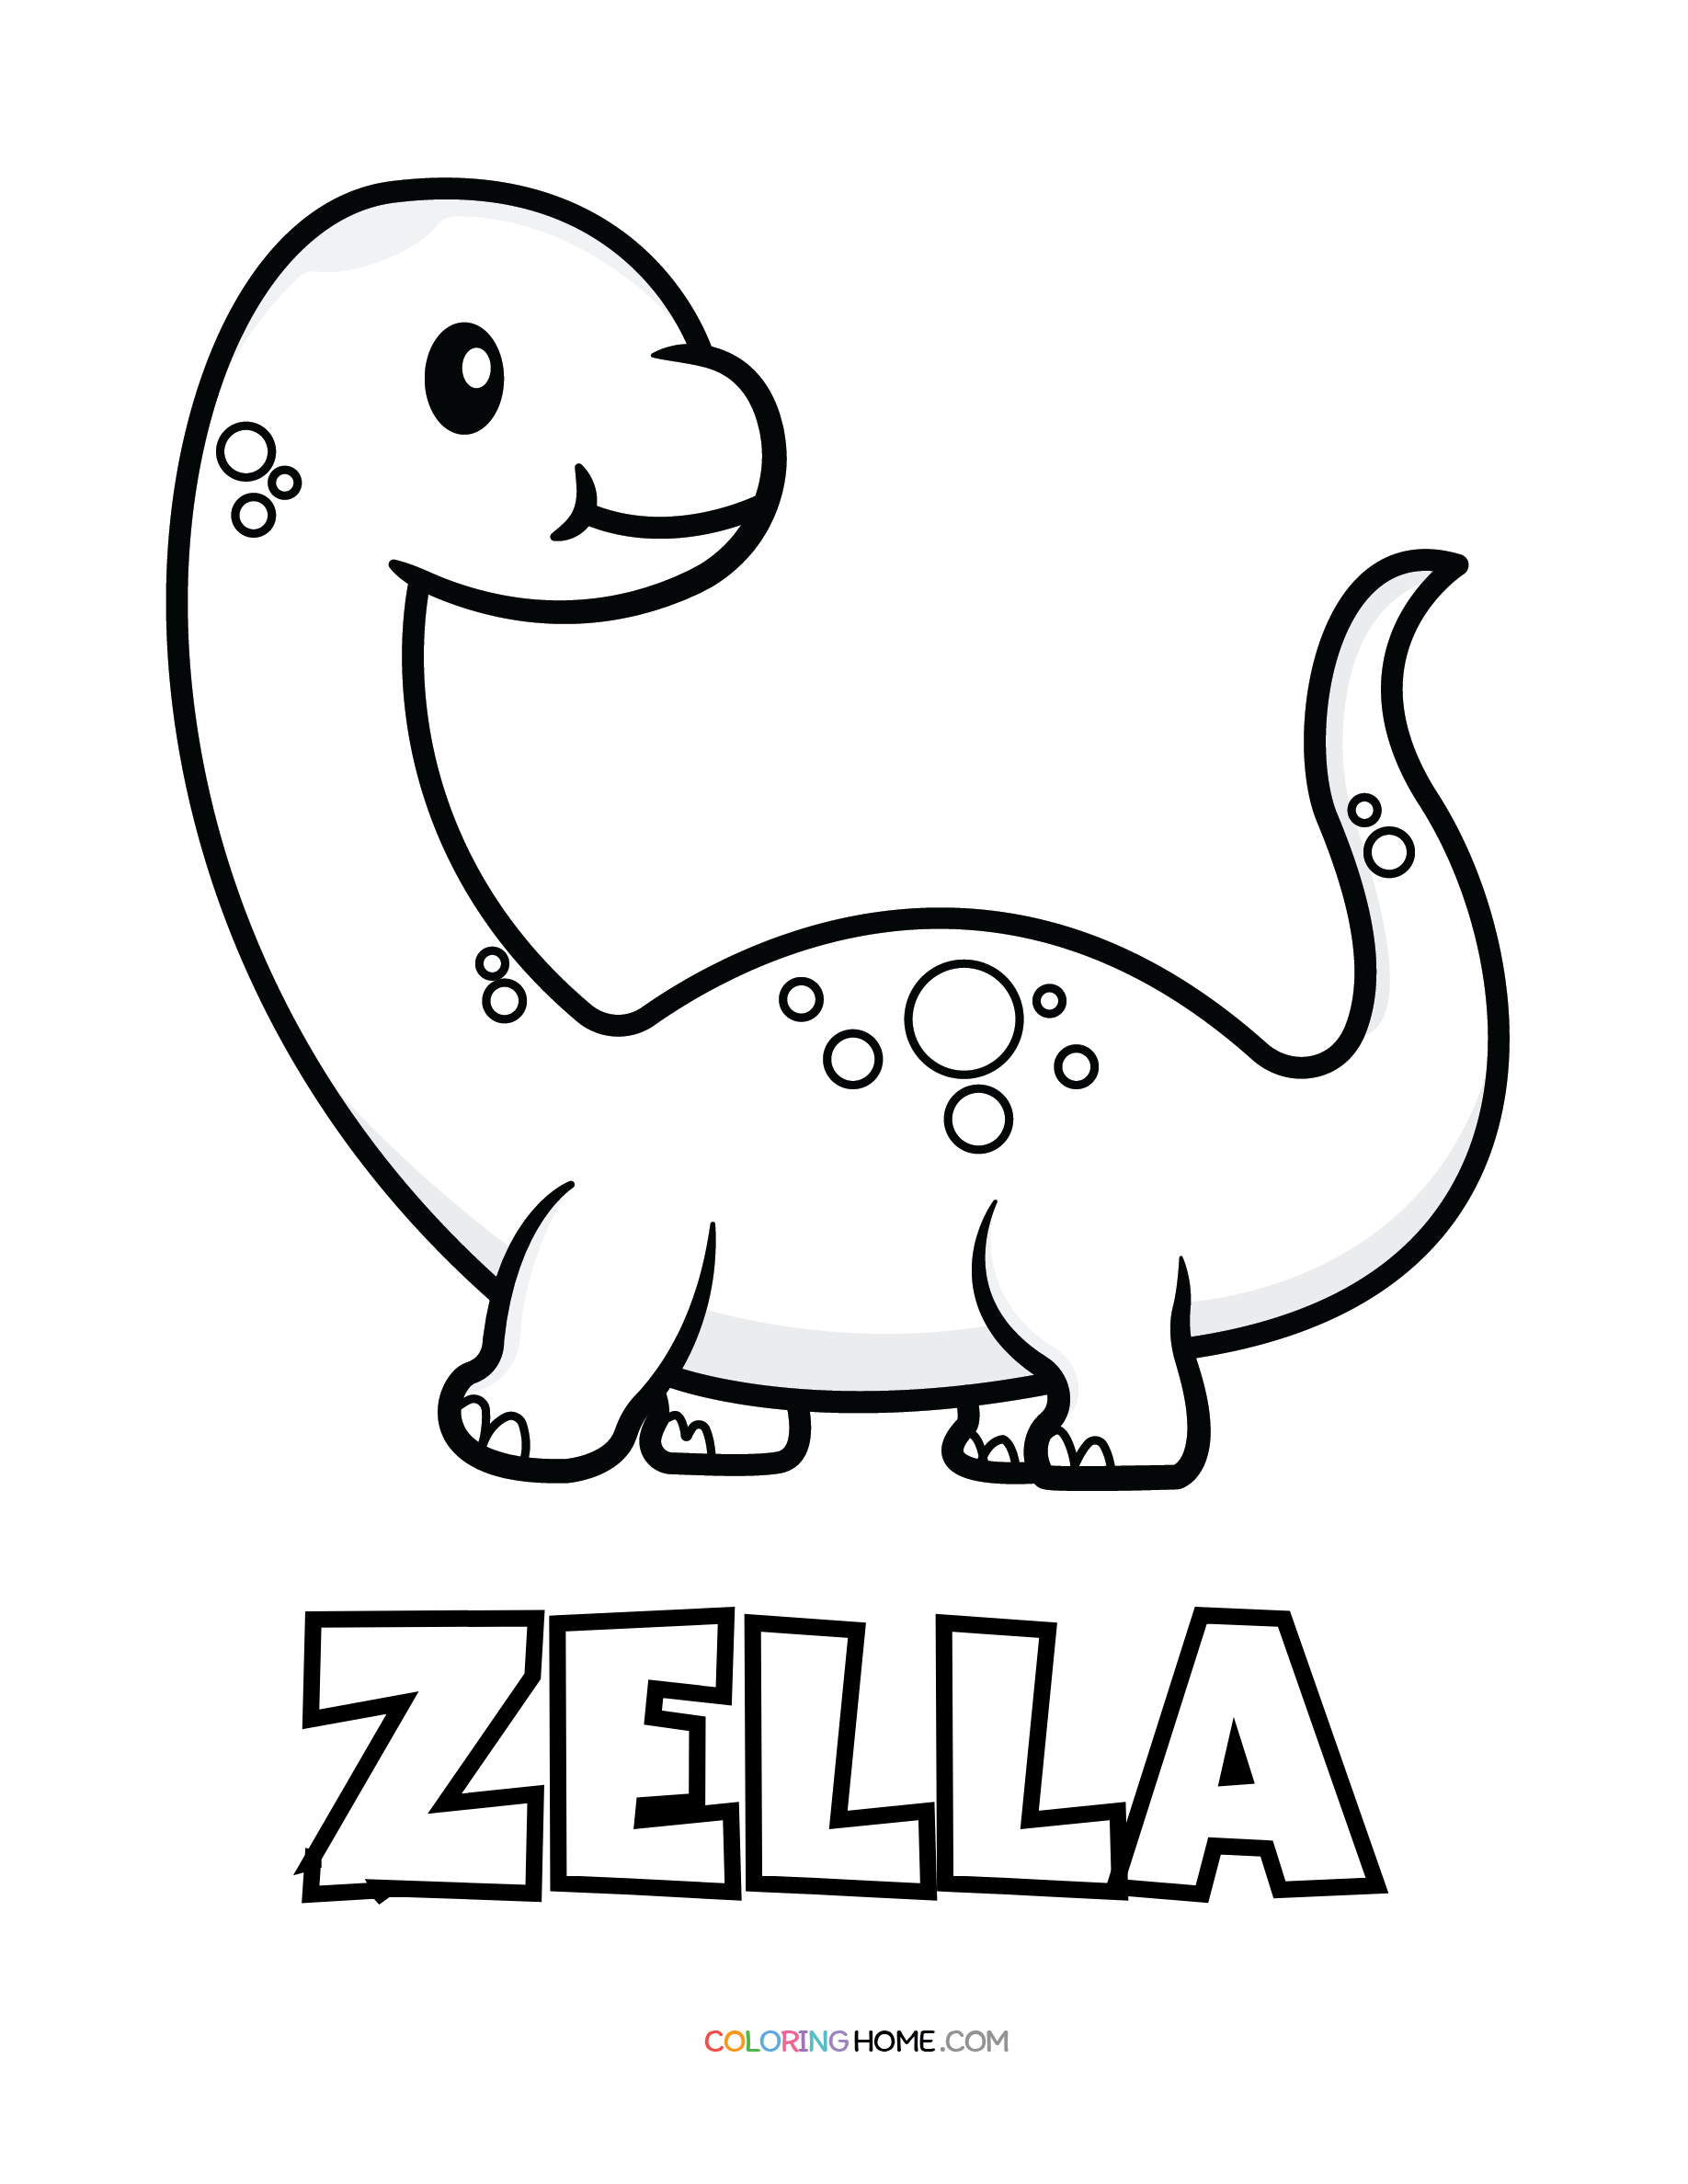 Zella dinosaur coloring page